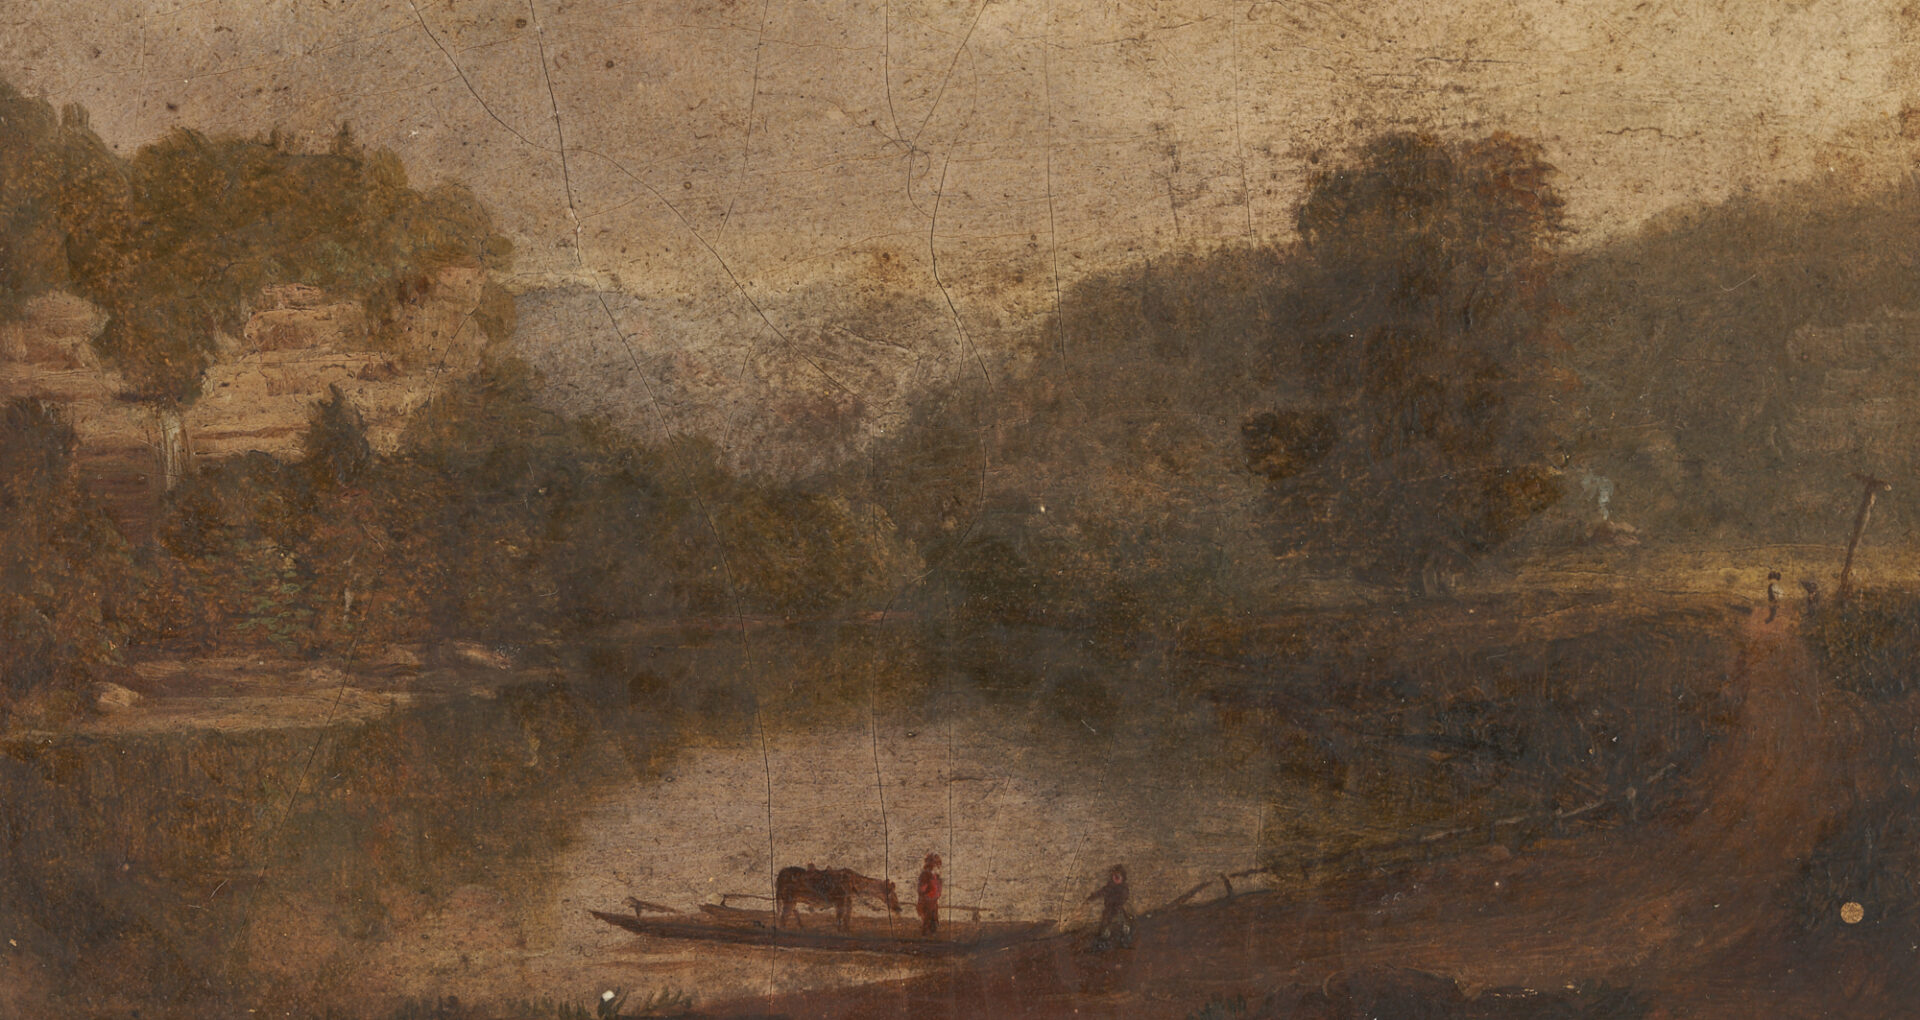 Lot 170: Thos. Worthington Whittredge 1846 Oil Painting, Shaker Ferry – Kentucky River